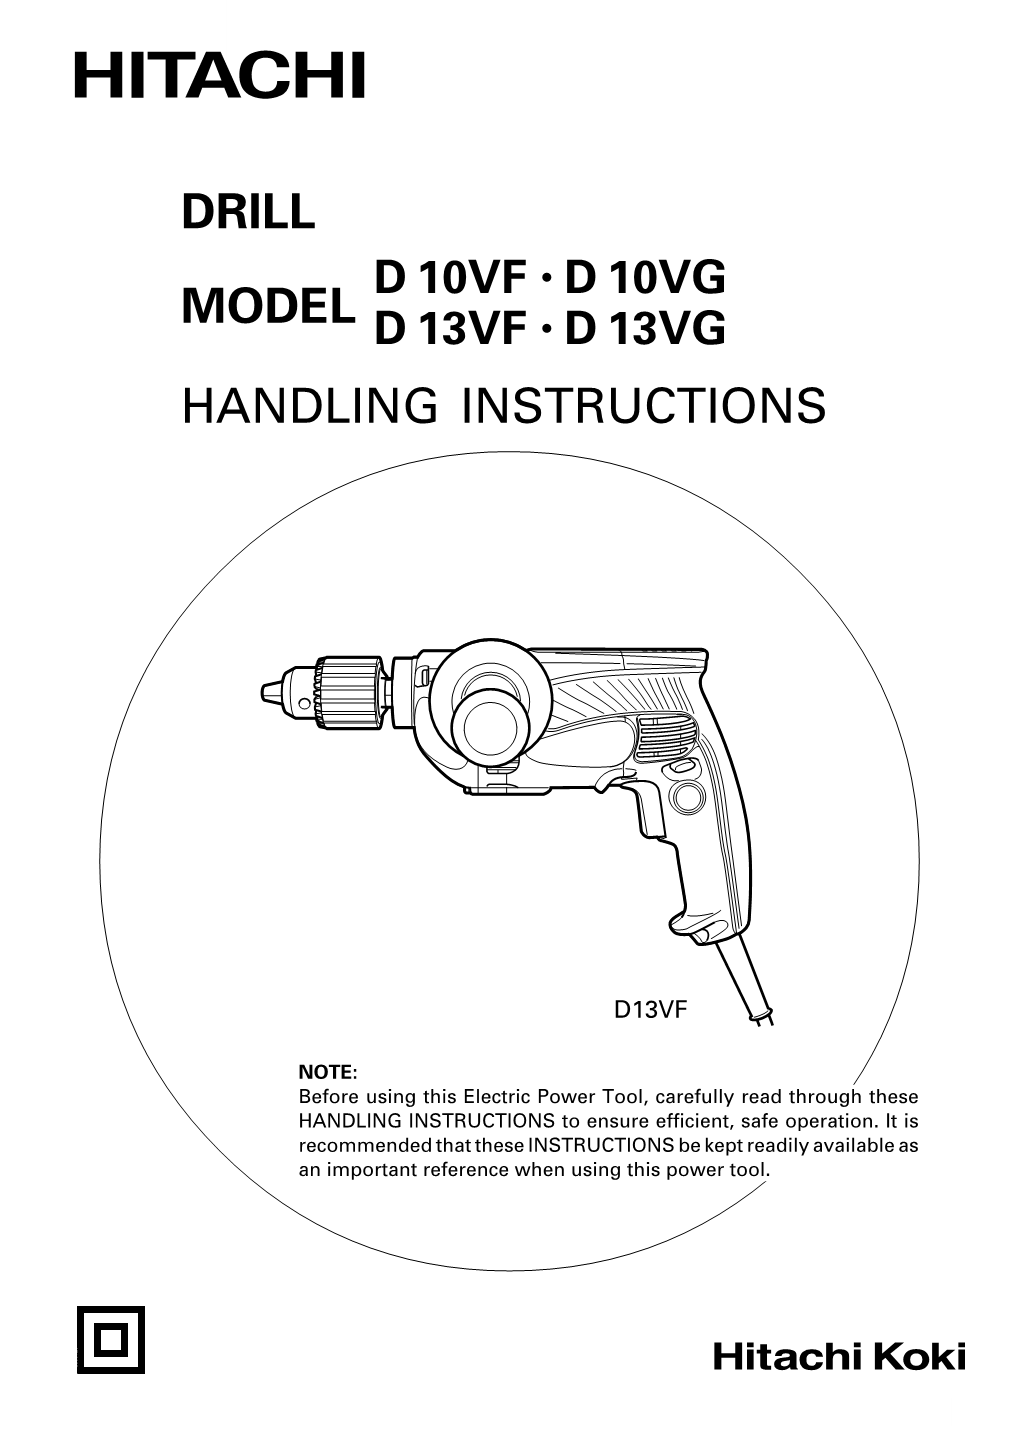 Drill Model Handling Instructions